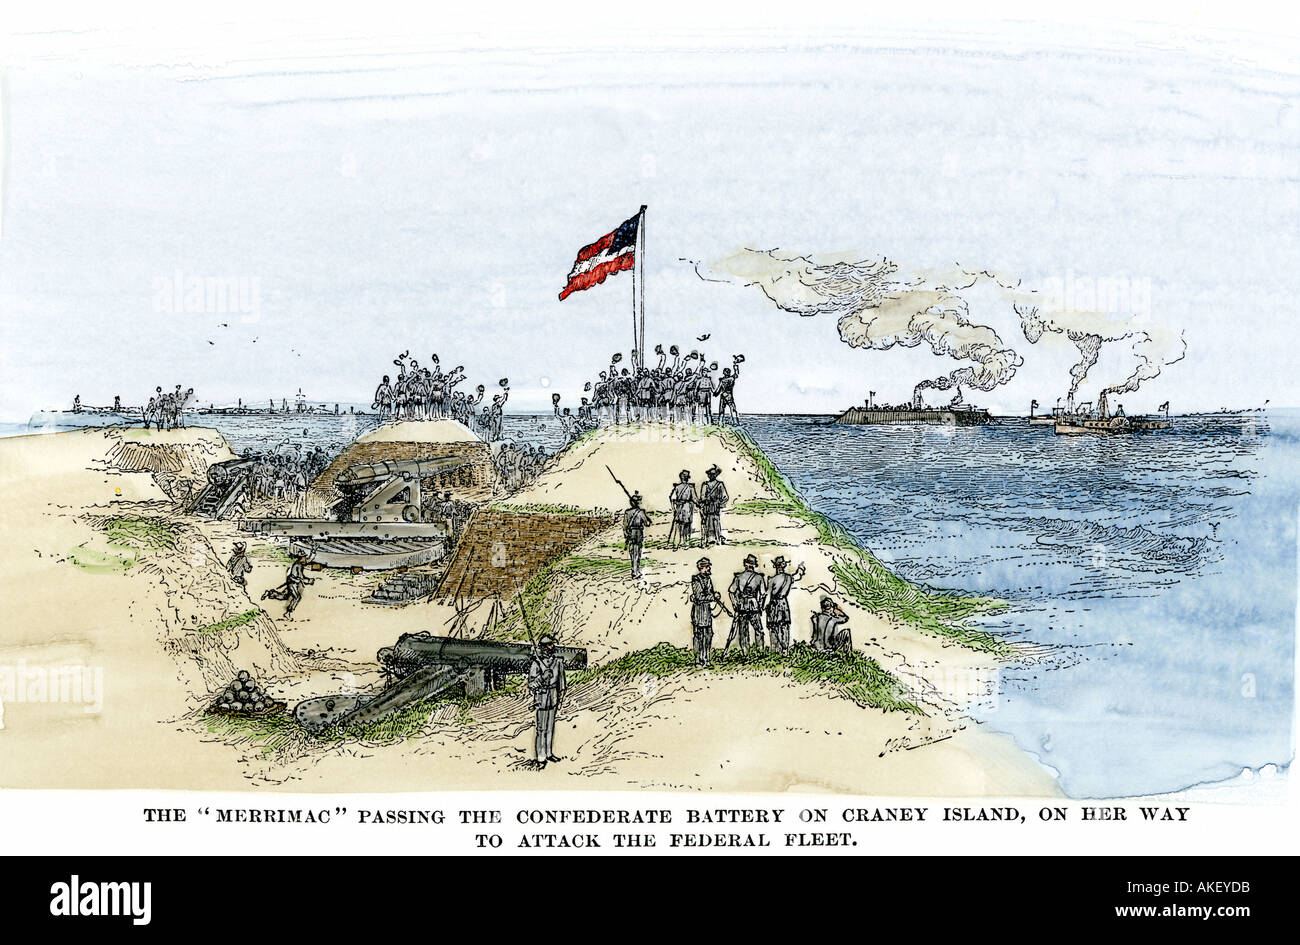 Gepanzerte Schiff Merrimack von Konföderierten Batterie auf craney Insel jubelten en Route der Union Flotte 1862 in Angriff zu nehmen. Hand - farbige Holzschnitt Stockfoto